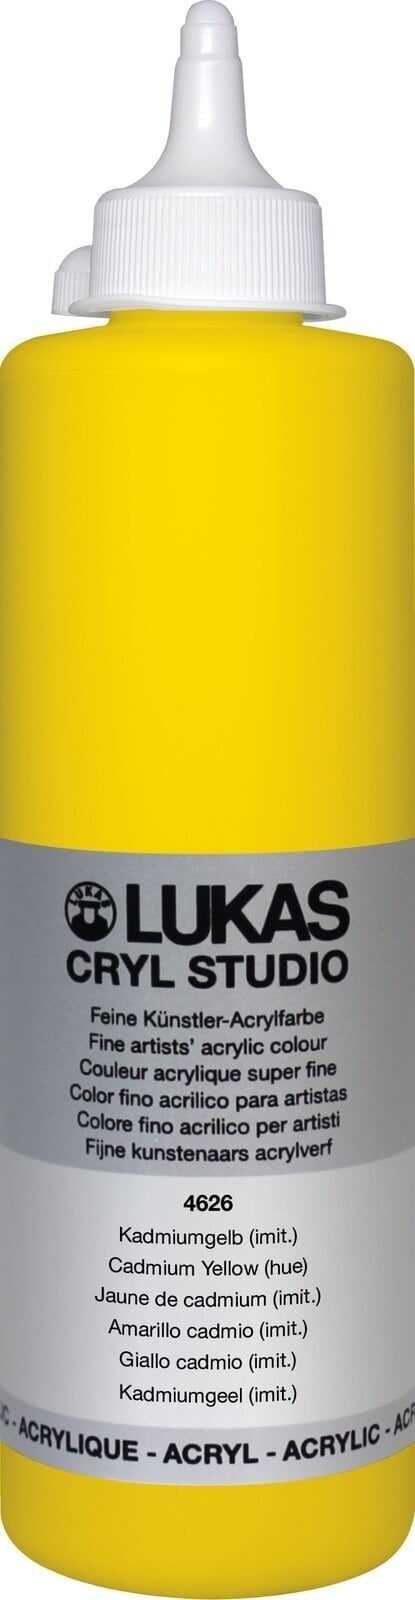 Peinture acrylique Lukas Cryl Studio Acrylic Paint Plastic Bottle Peinture acrylique Cadmium Yellow Hue 500 ml 1 pc